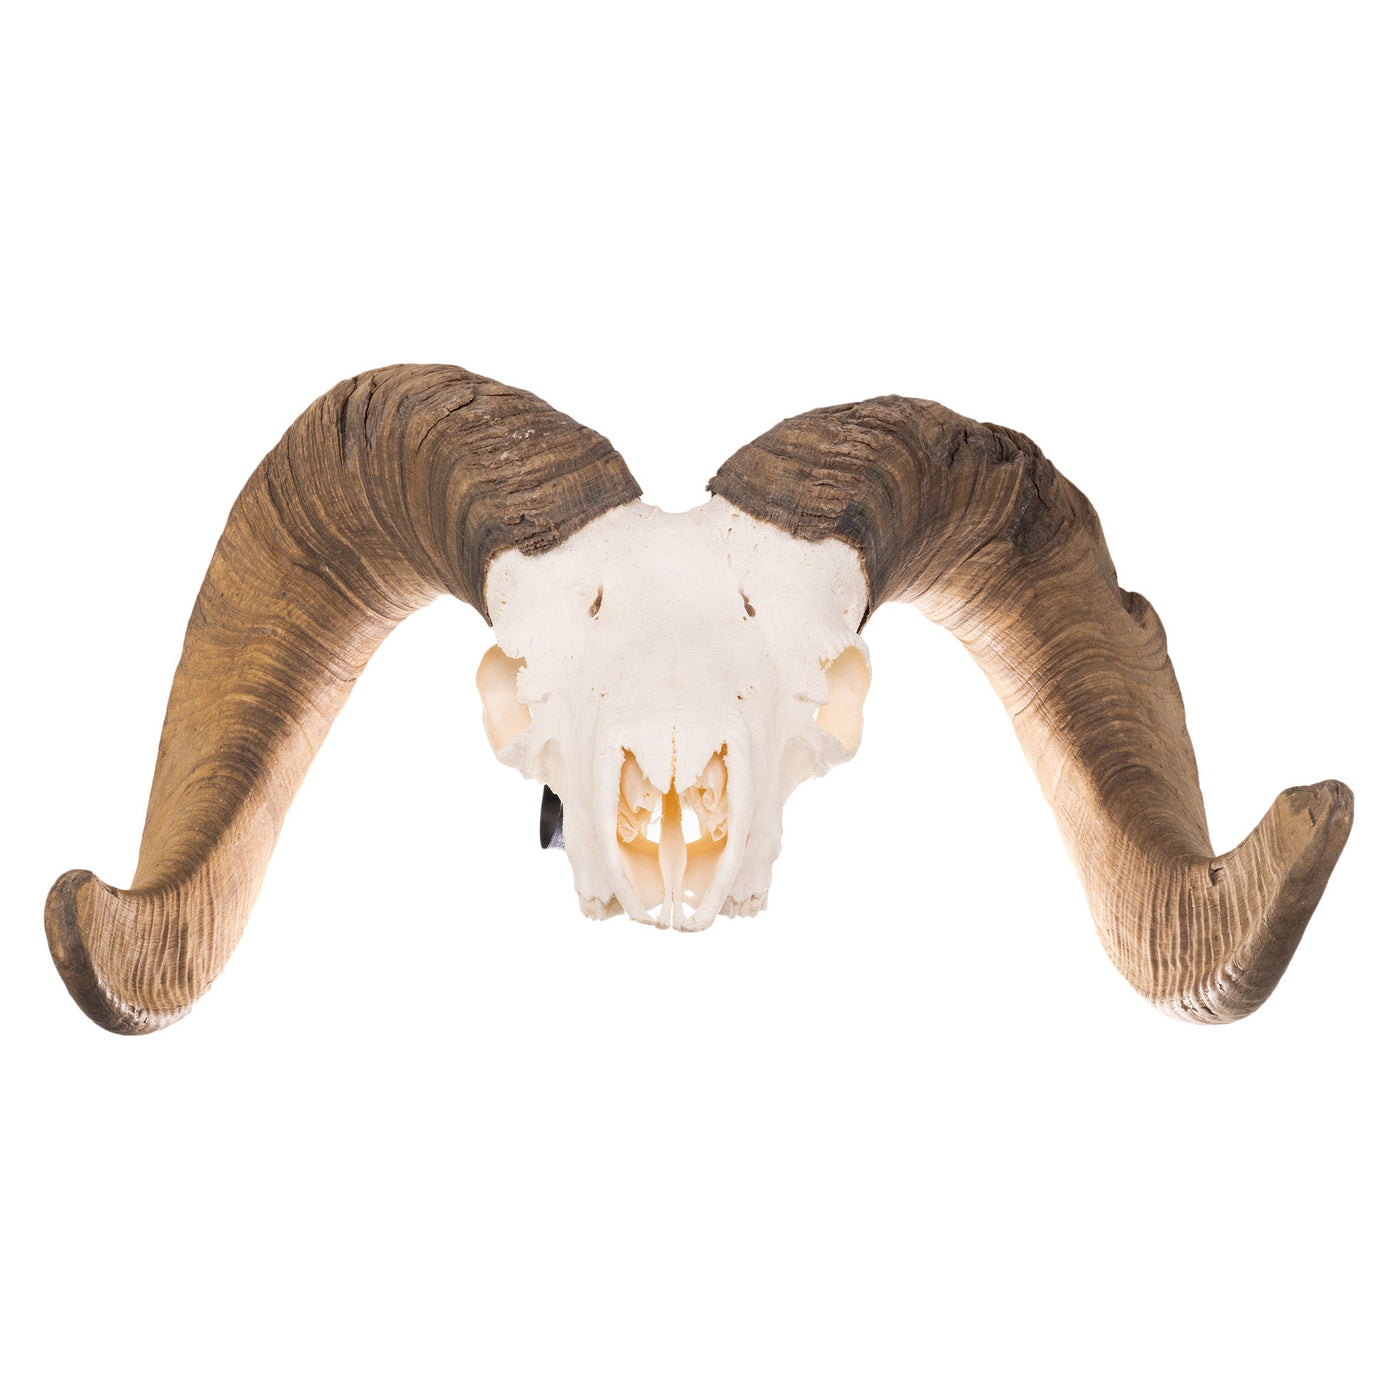 Real Desert Bighorn Sheep Skull — Skulls Unlimited International, Inc.